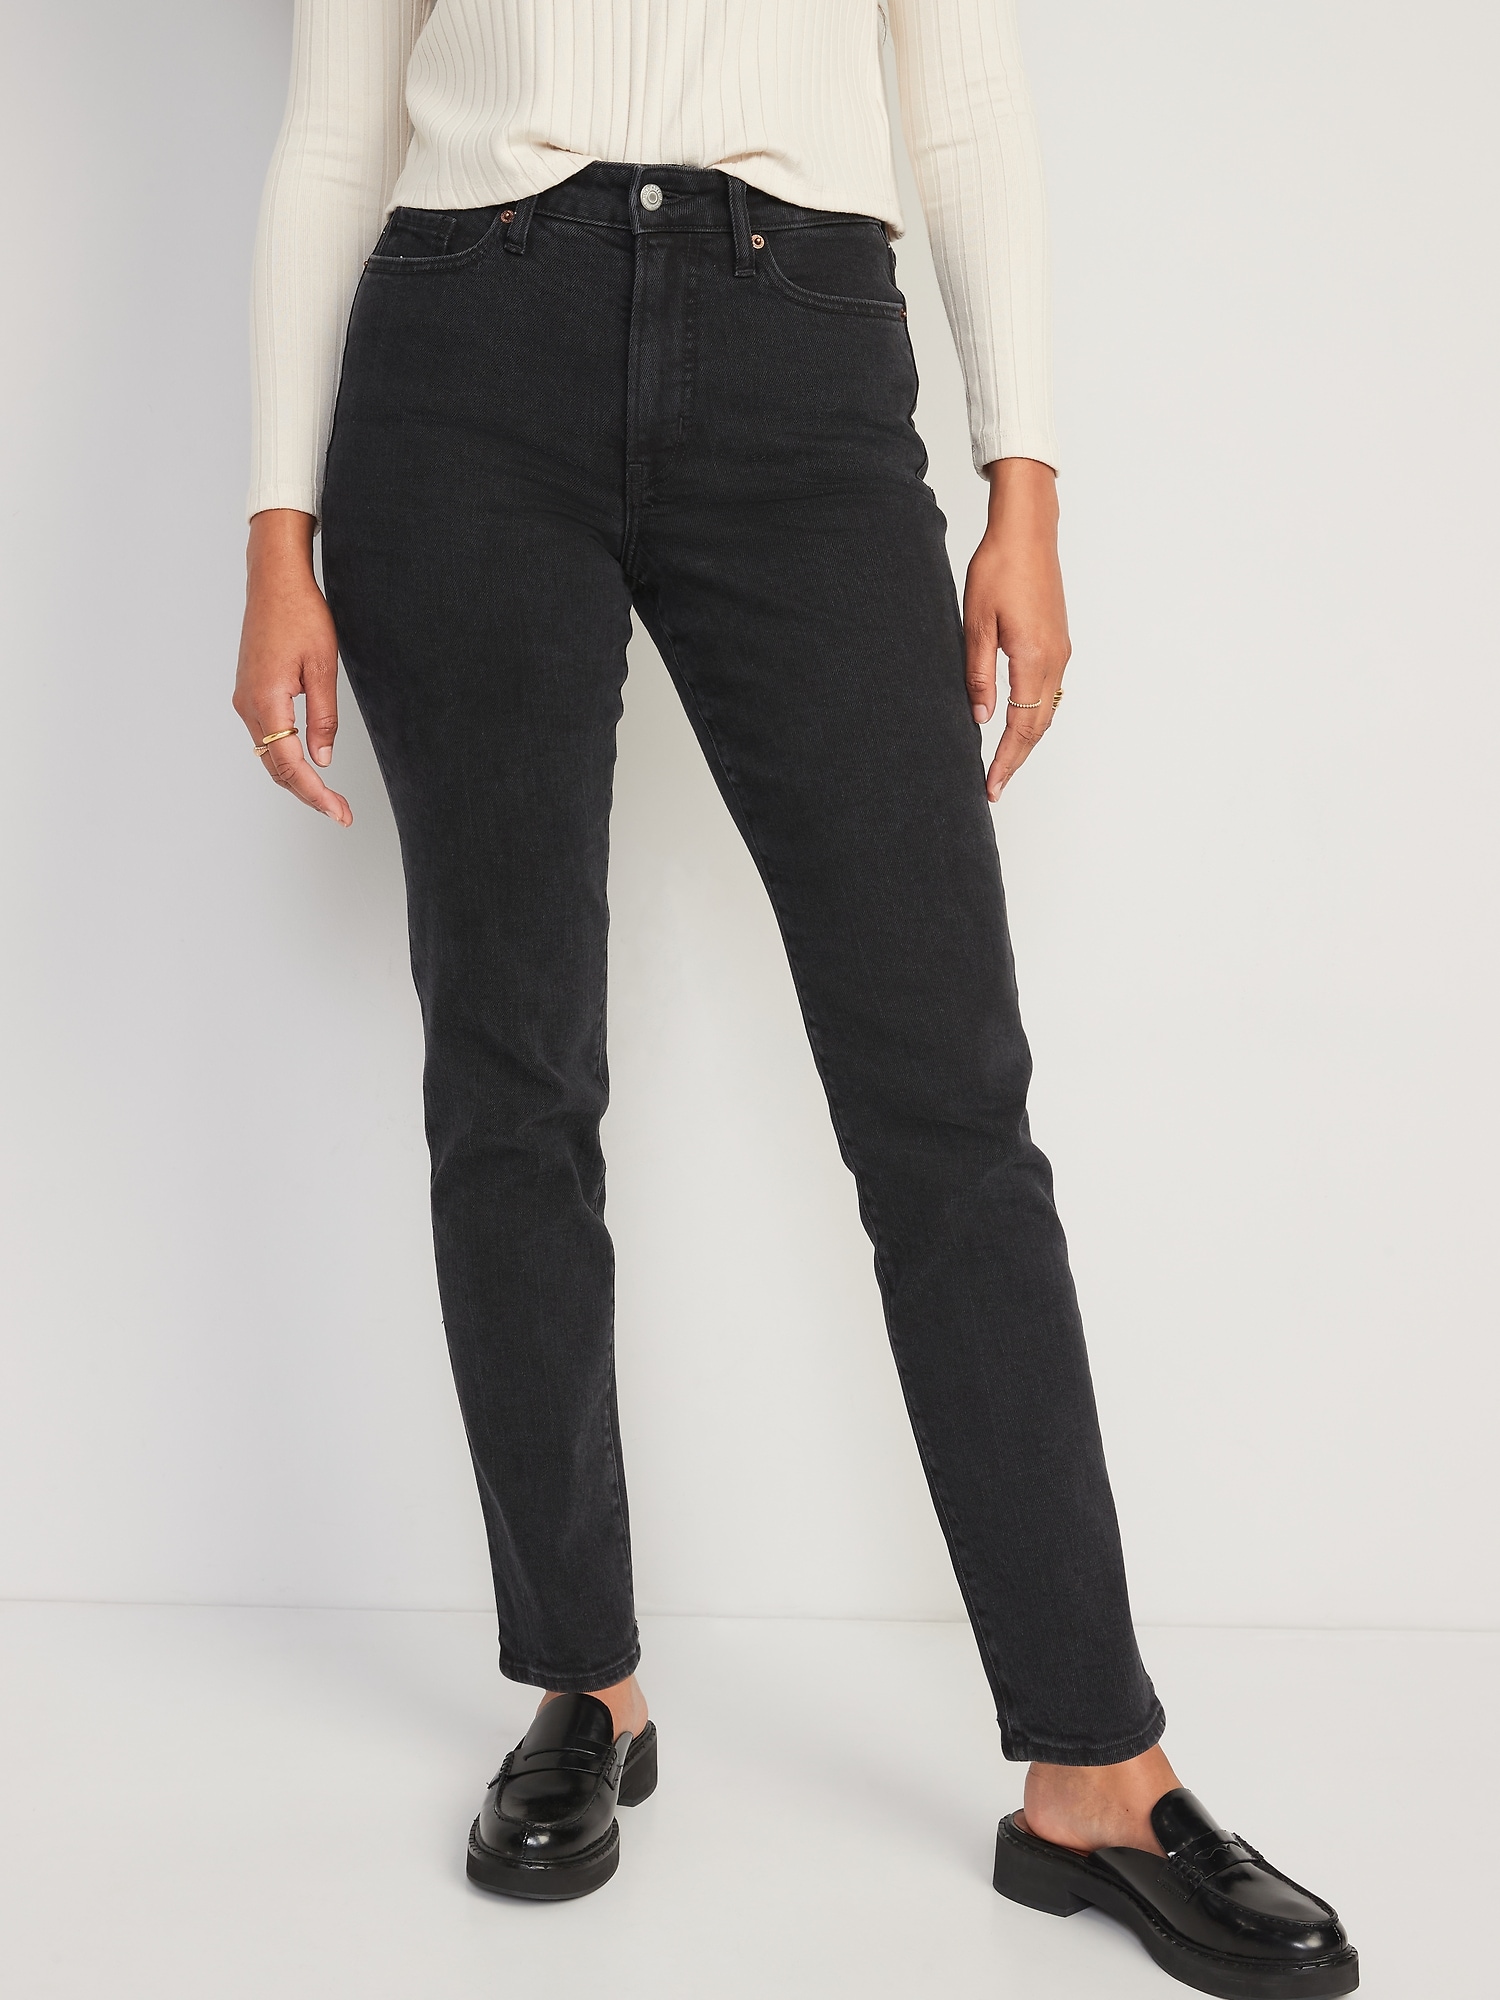 Old Navy High-Waisted OG Straight Black Jeans for Women black. 1